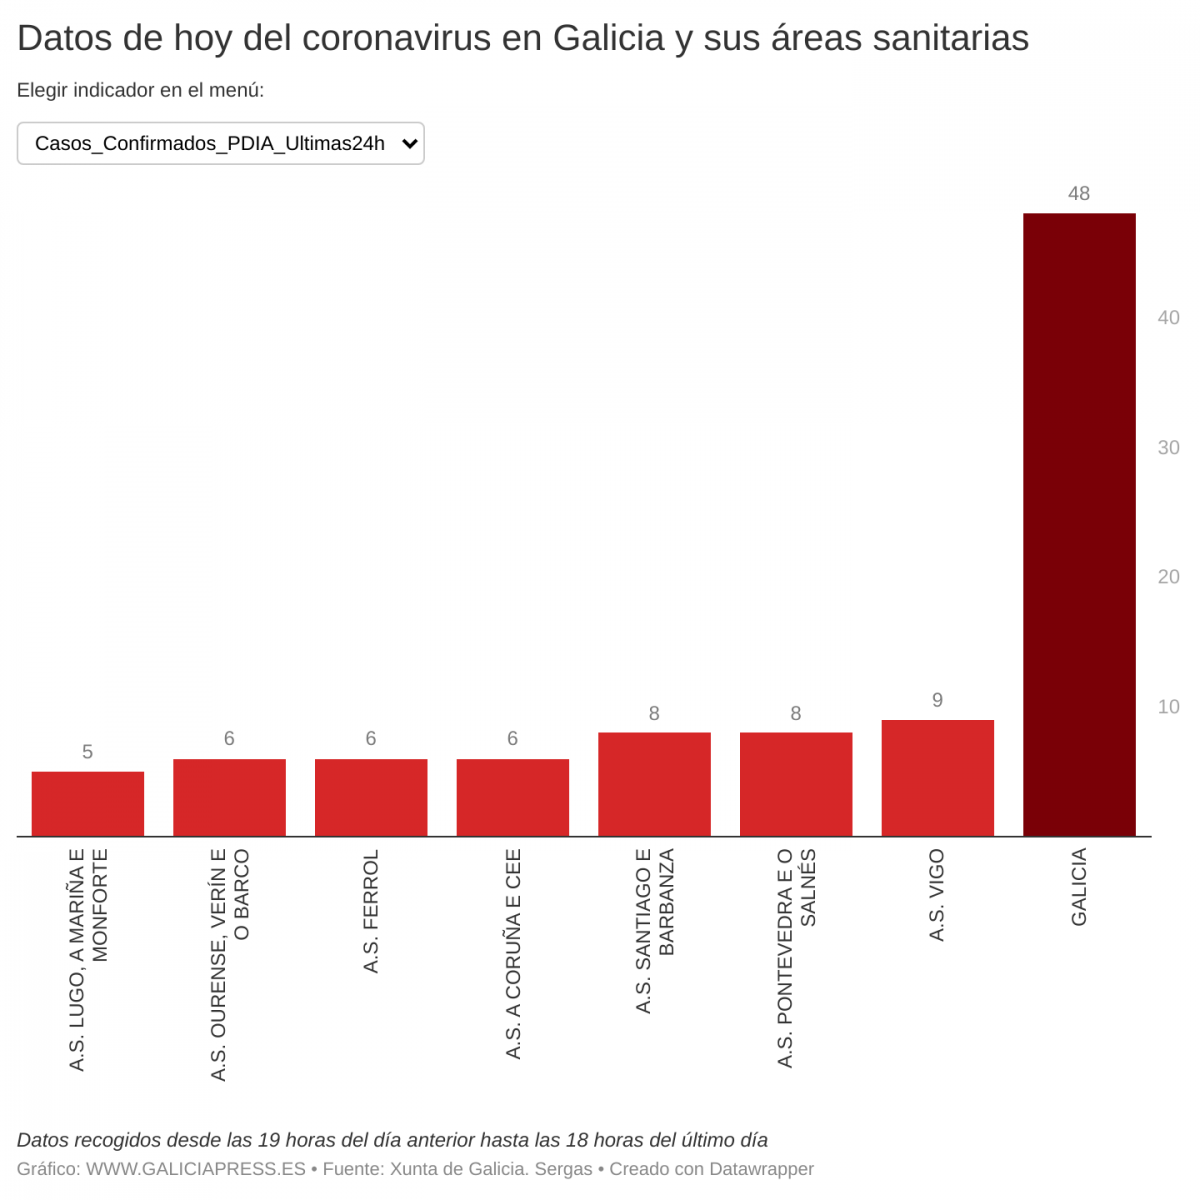 OJ8D8 datos de hoy del coronavirus en galicia y sus reas sanitarias 